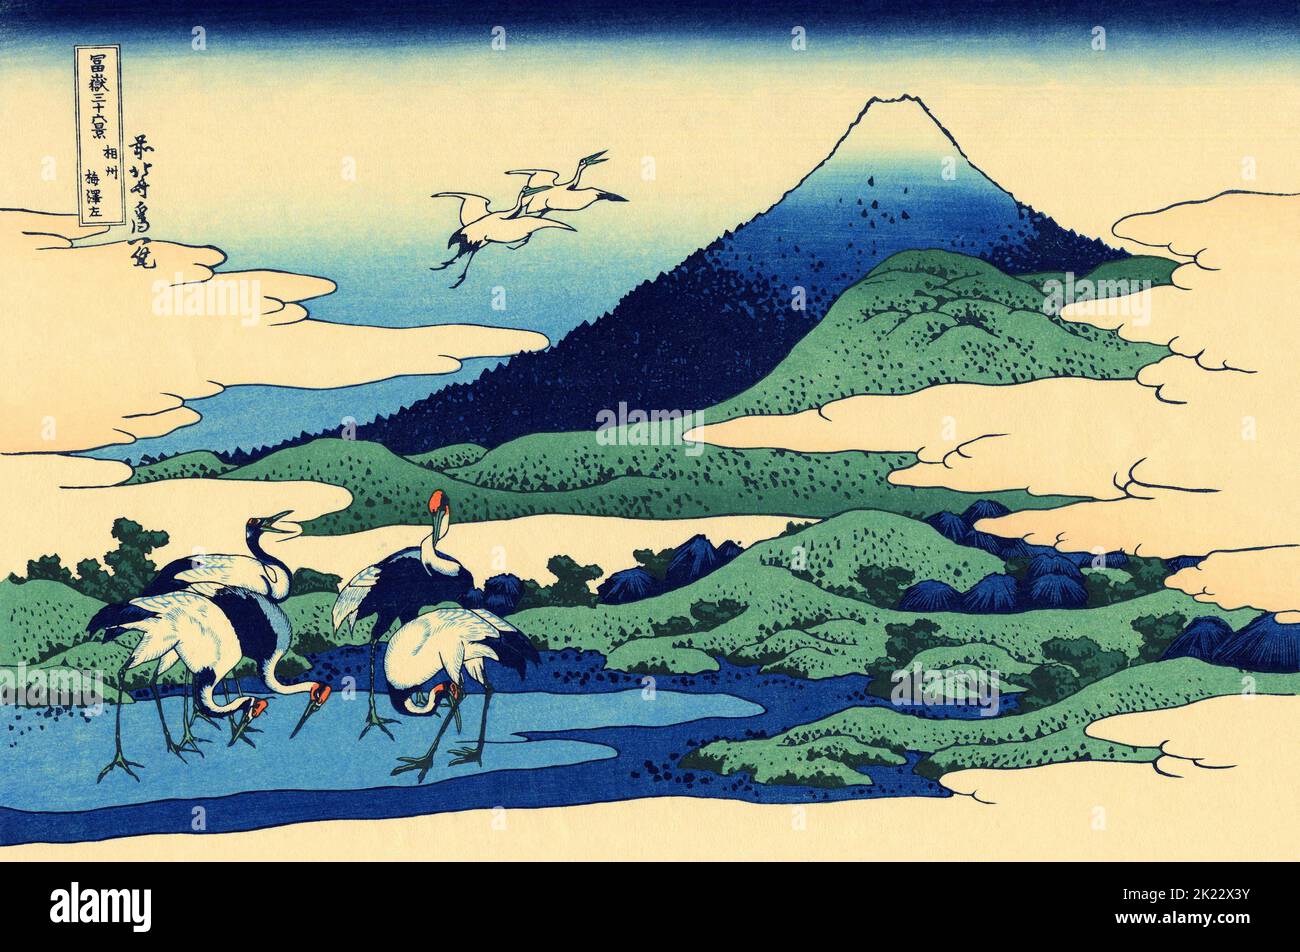 Japón: «Umegawa en la provincia de Sagami». Impresión en bloque de madera ukiyo-e de la serie «Treinta y seis vistas del monte Fuji» de Katsushika Hokusai (31 de octubre de 1760 - 10 de mayo de 1849), c. 1830. «36 Vistas del Monte Fuji» es una serie «ukiyo-e» de grandes grabados en madera del artista Katsushika Hokusai. La serie muestra el Monte Fuji en diferentes estaciones y condiciones climáticas desde diversos lugares y distancias. En realidad consiste en 46 impresiones creadas entre 1826 y 1833. Los primeros 36 fueron incluidos en la publicación original y, debido a su popularidad, 10 más fueron añadidos después de la publicación original. Foto de stock